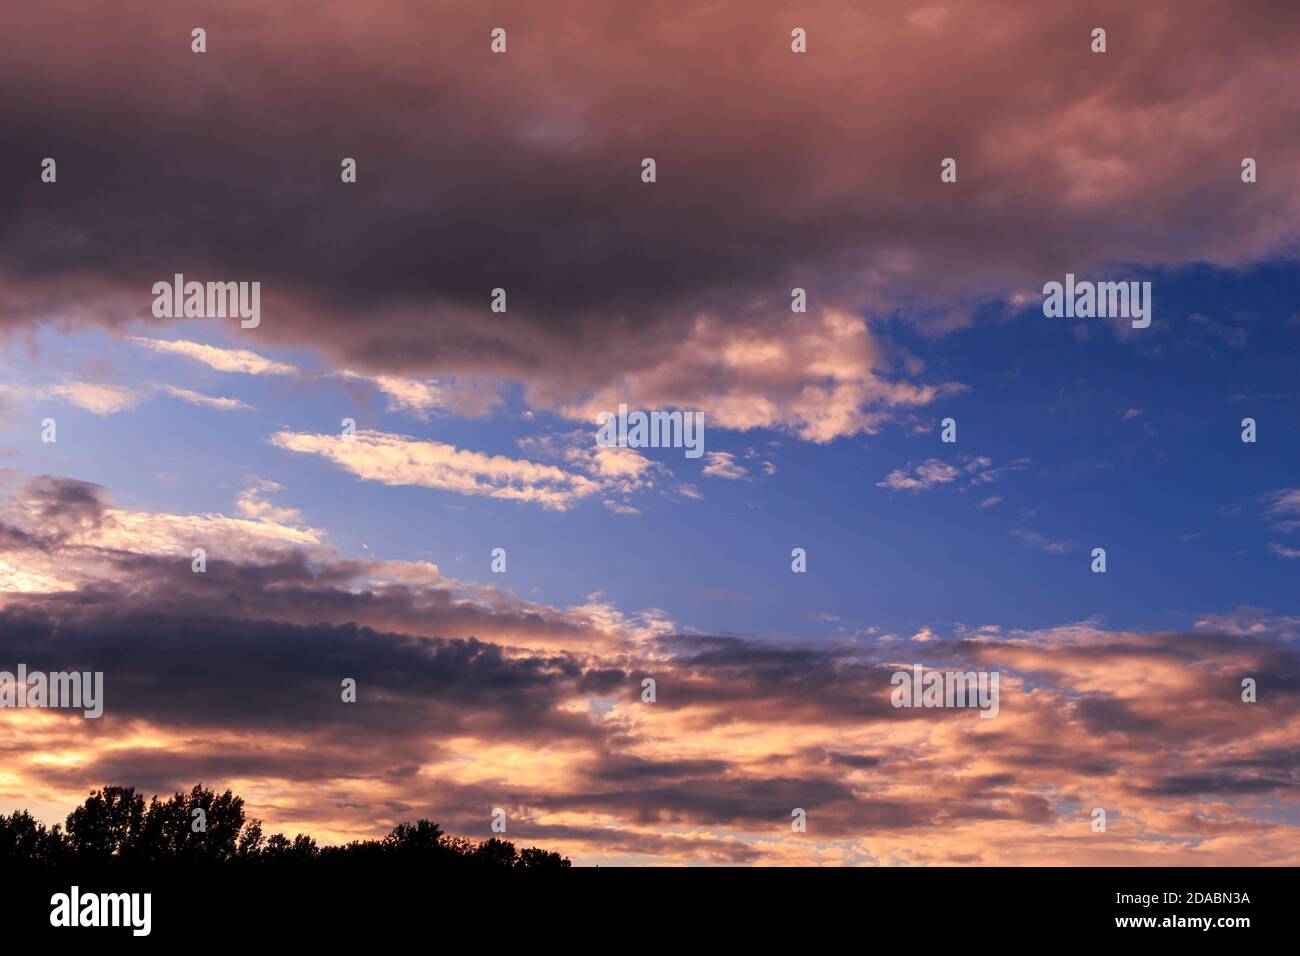 Spektakuläre Magenta und gelbe Farben in den Wolken zur goldenen Stunde. Skyscape für Sky Replacement (Querformat) Stockfoto